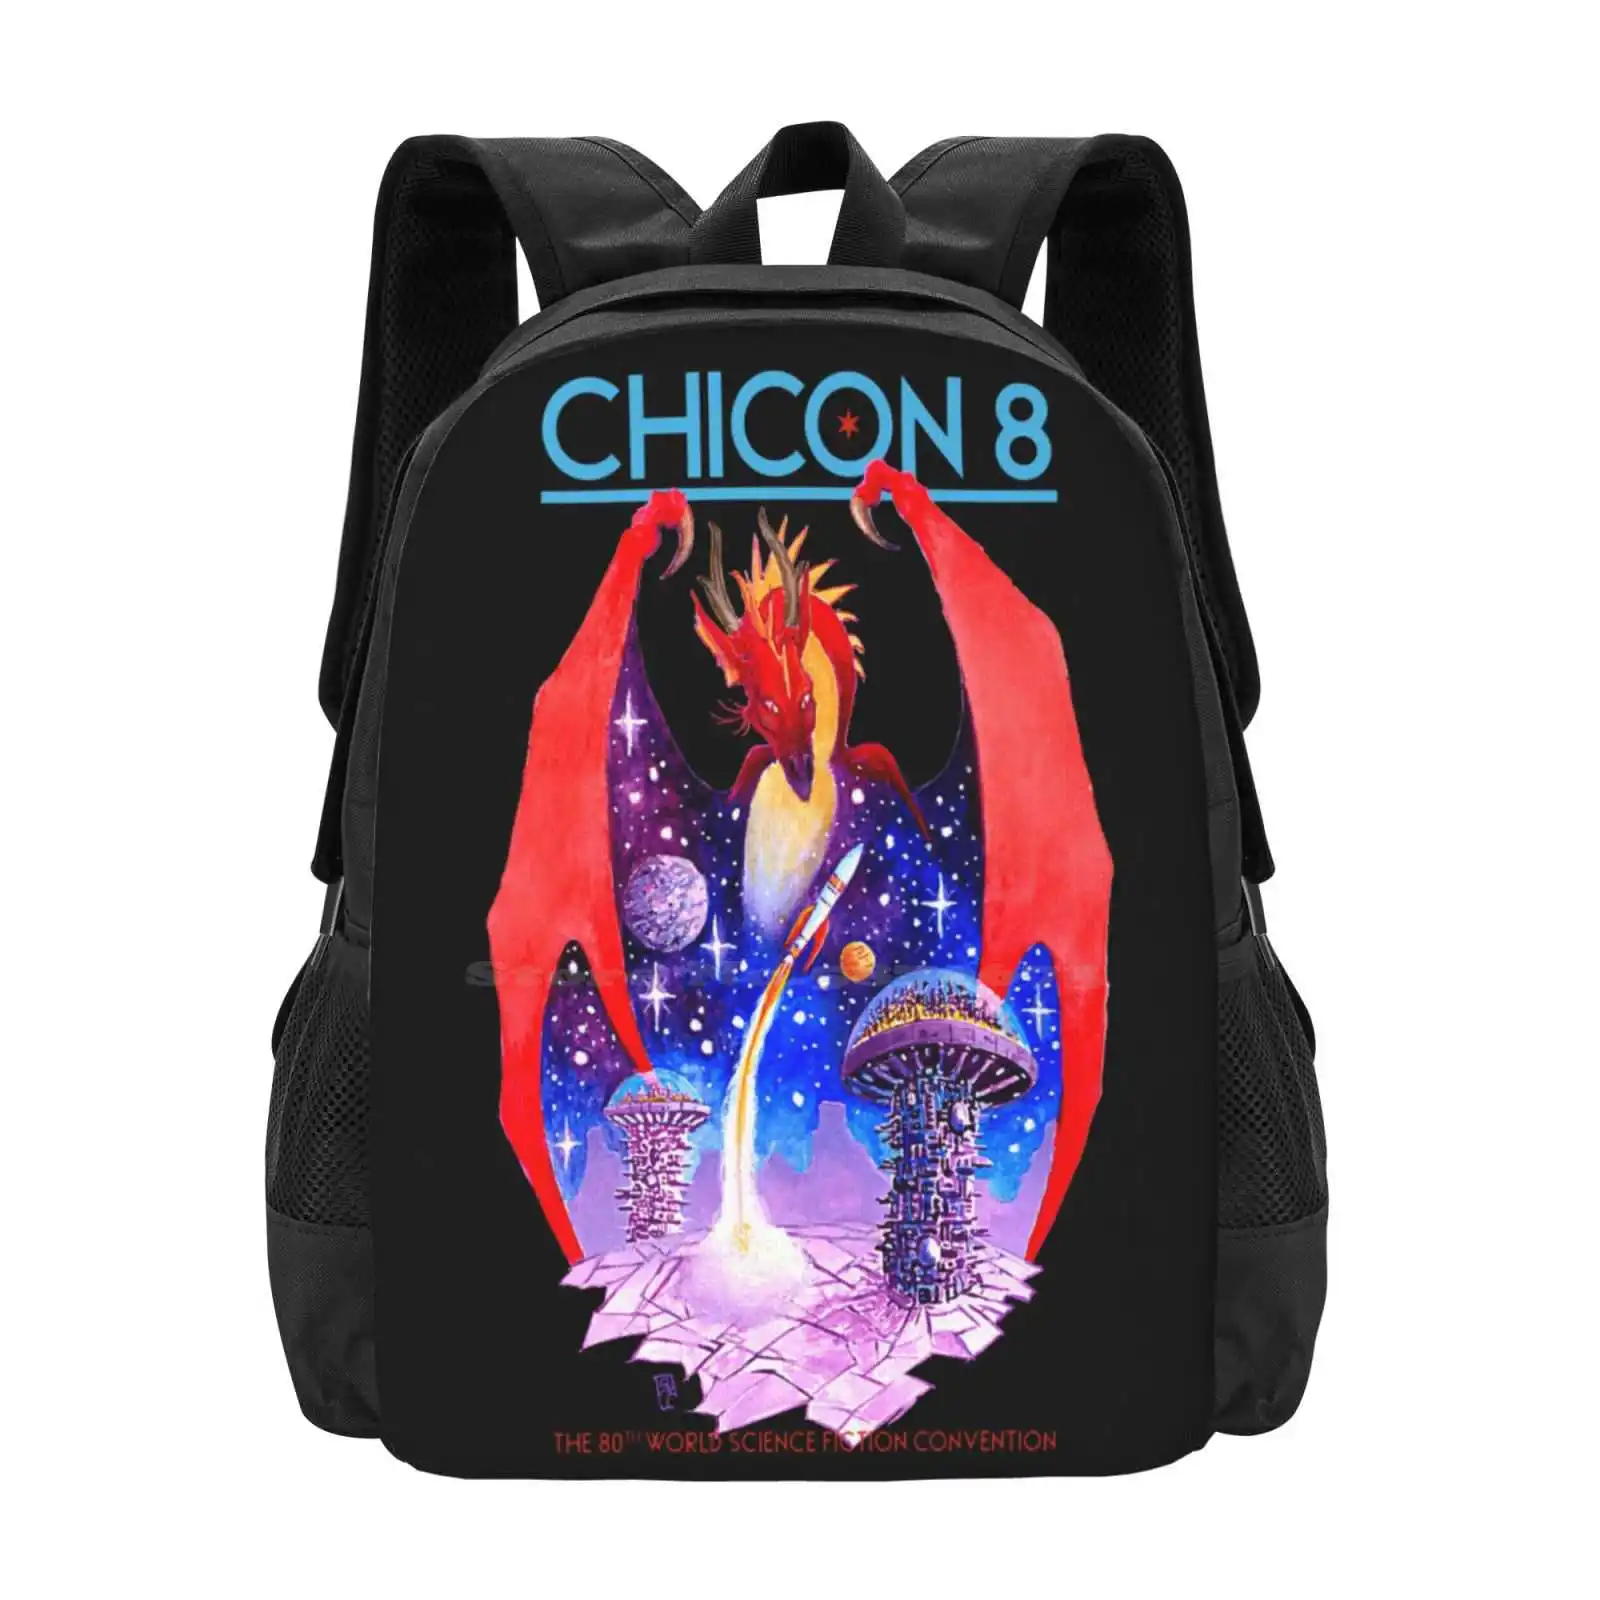 

Chicon 8: научная фантастика и Фэнтези, студенческий рюкзак для подростков, дизайнерские сумки с рисунком Chicon 8 Worldcon 2022, Чикаго дракон